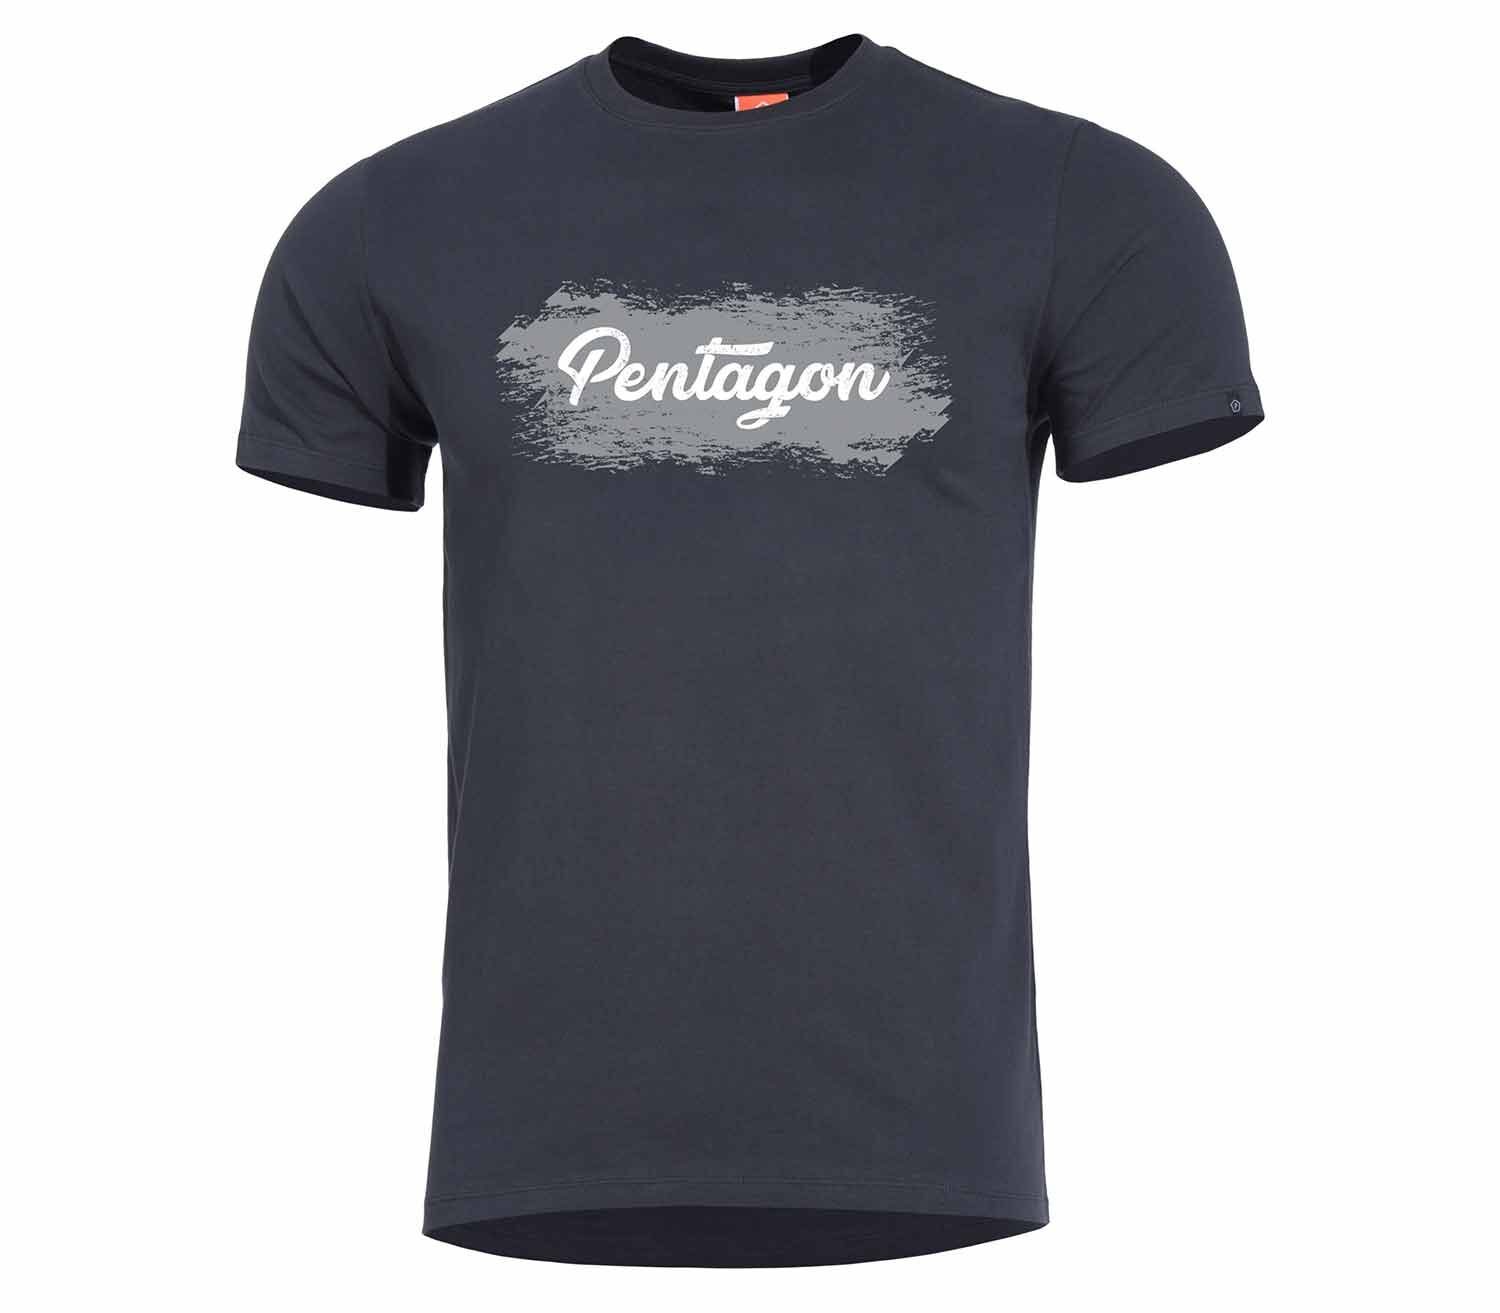 Camiseta-Pentagon-Grunge-Negro.jpg